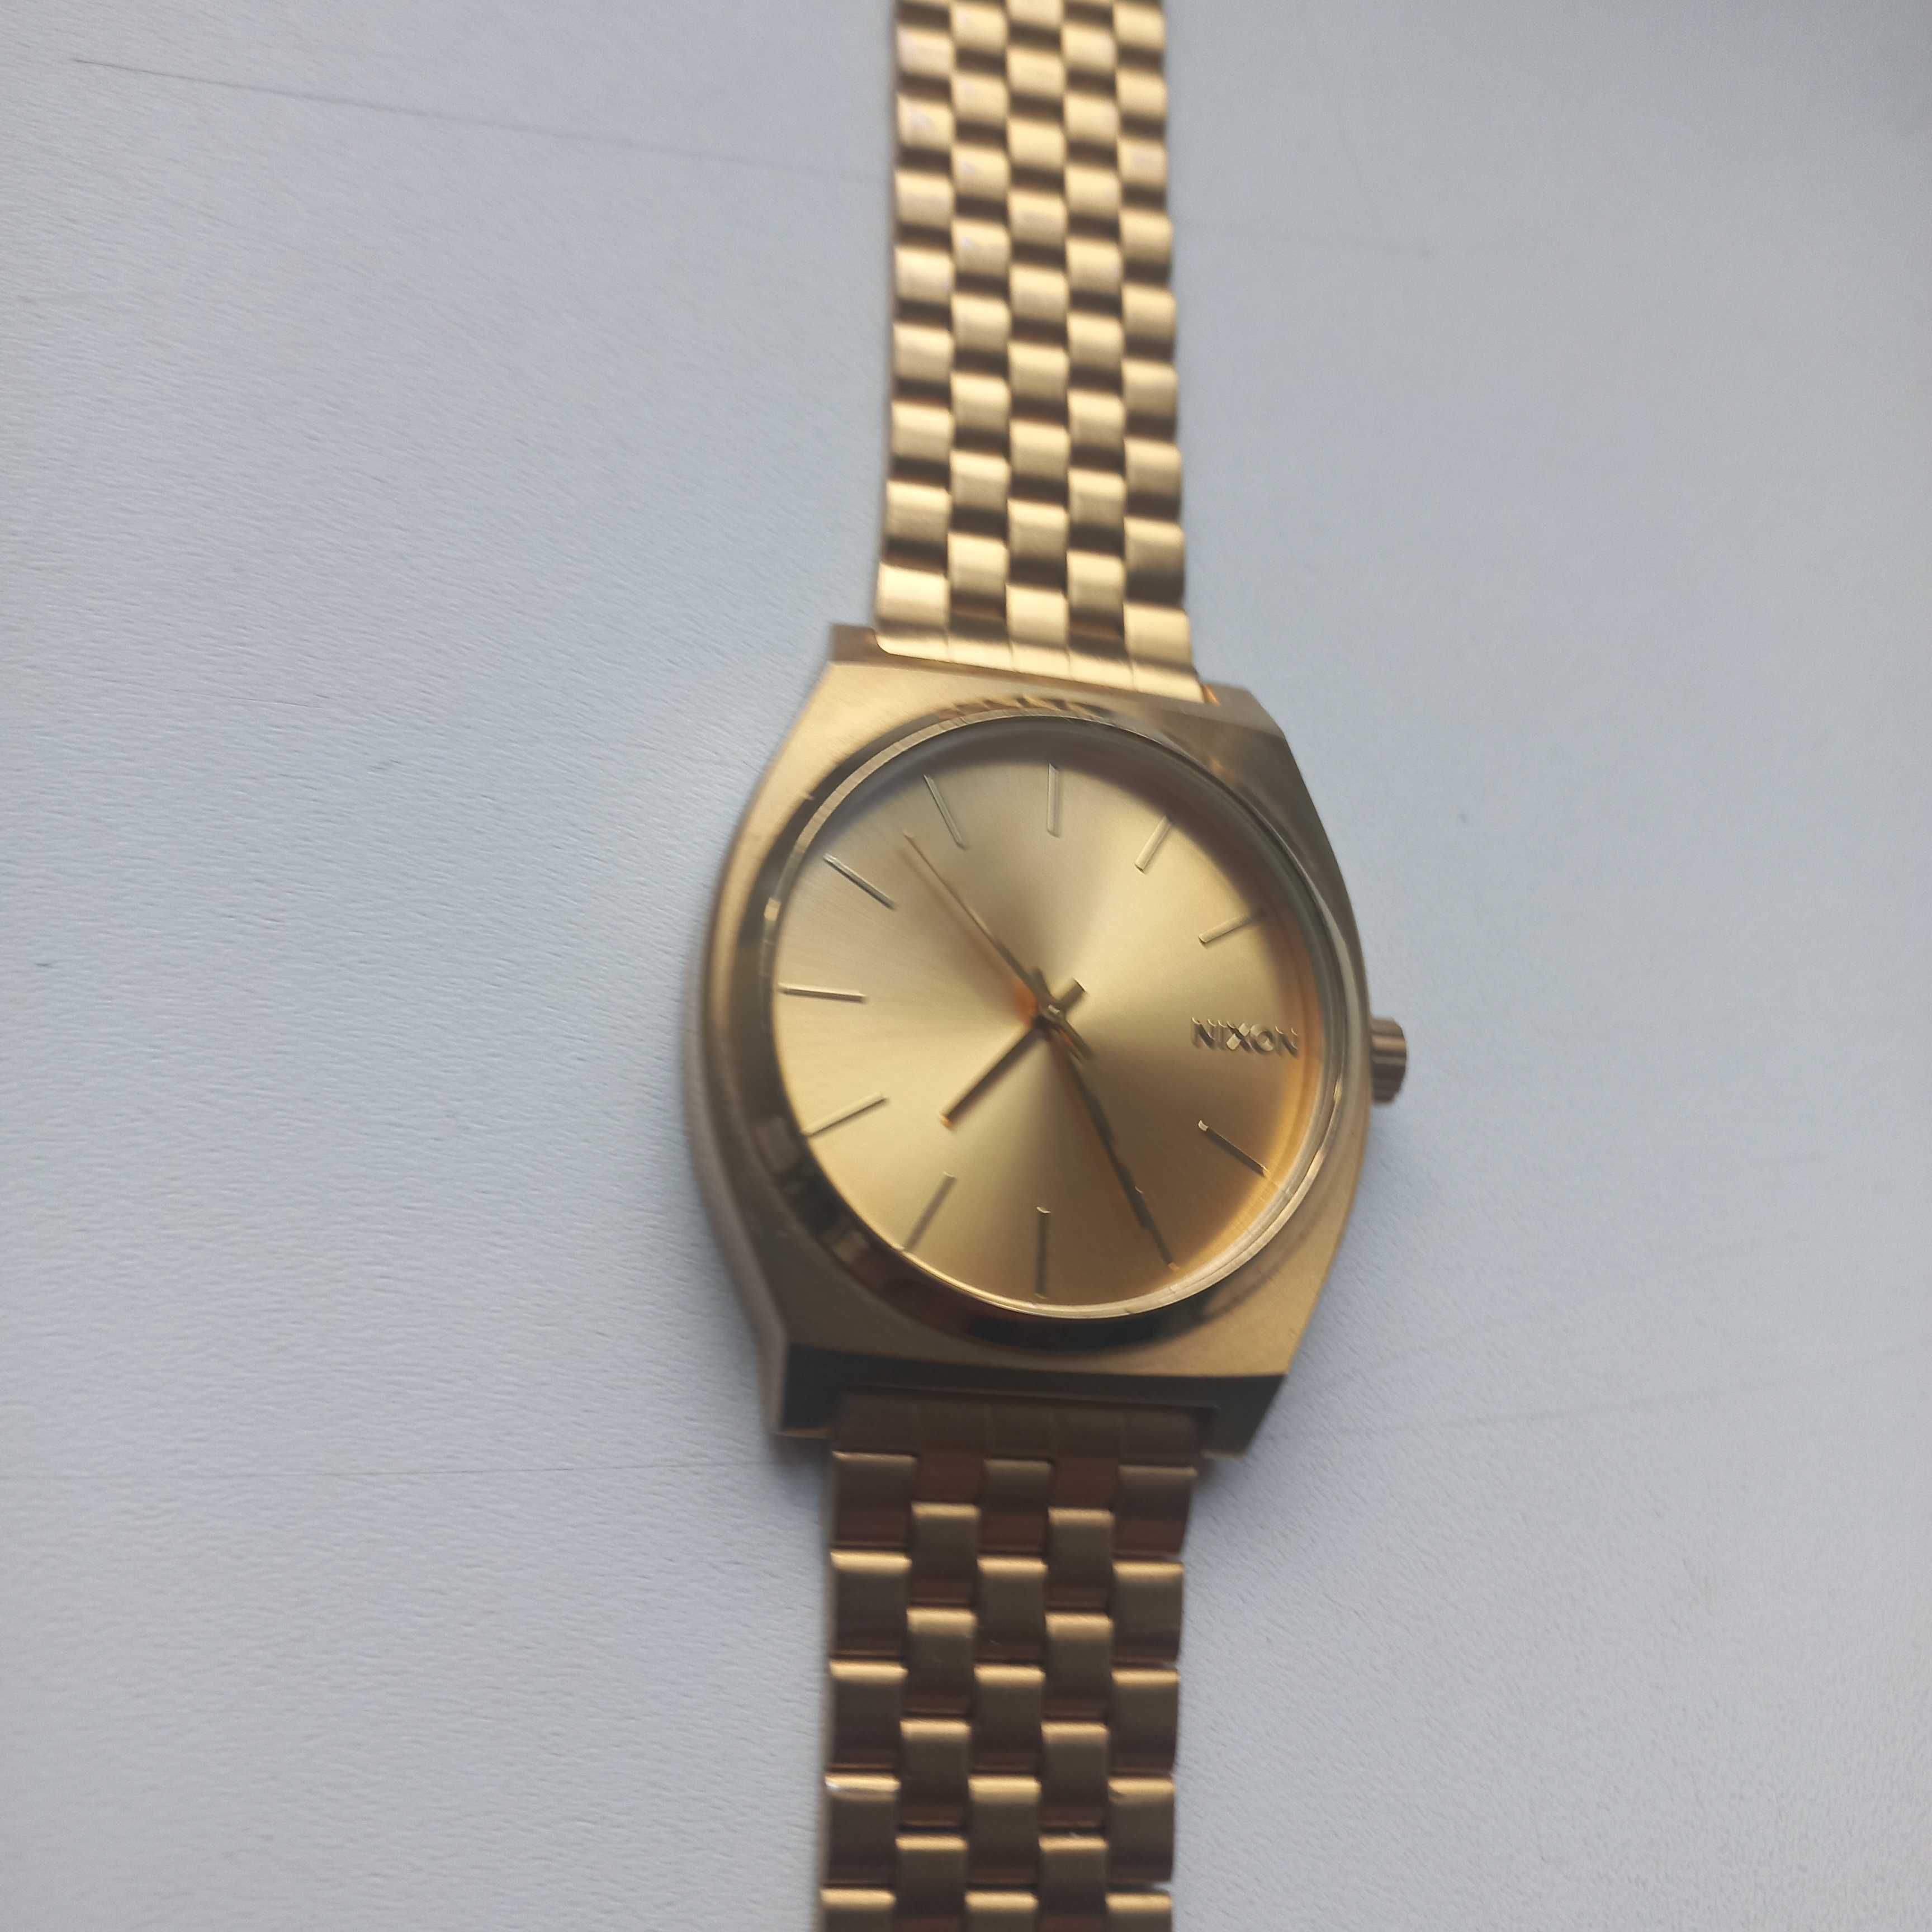 Zegarek Nixon Time Teller kolor złoty